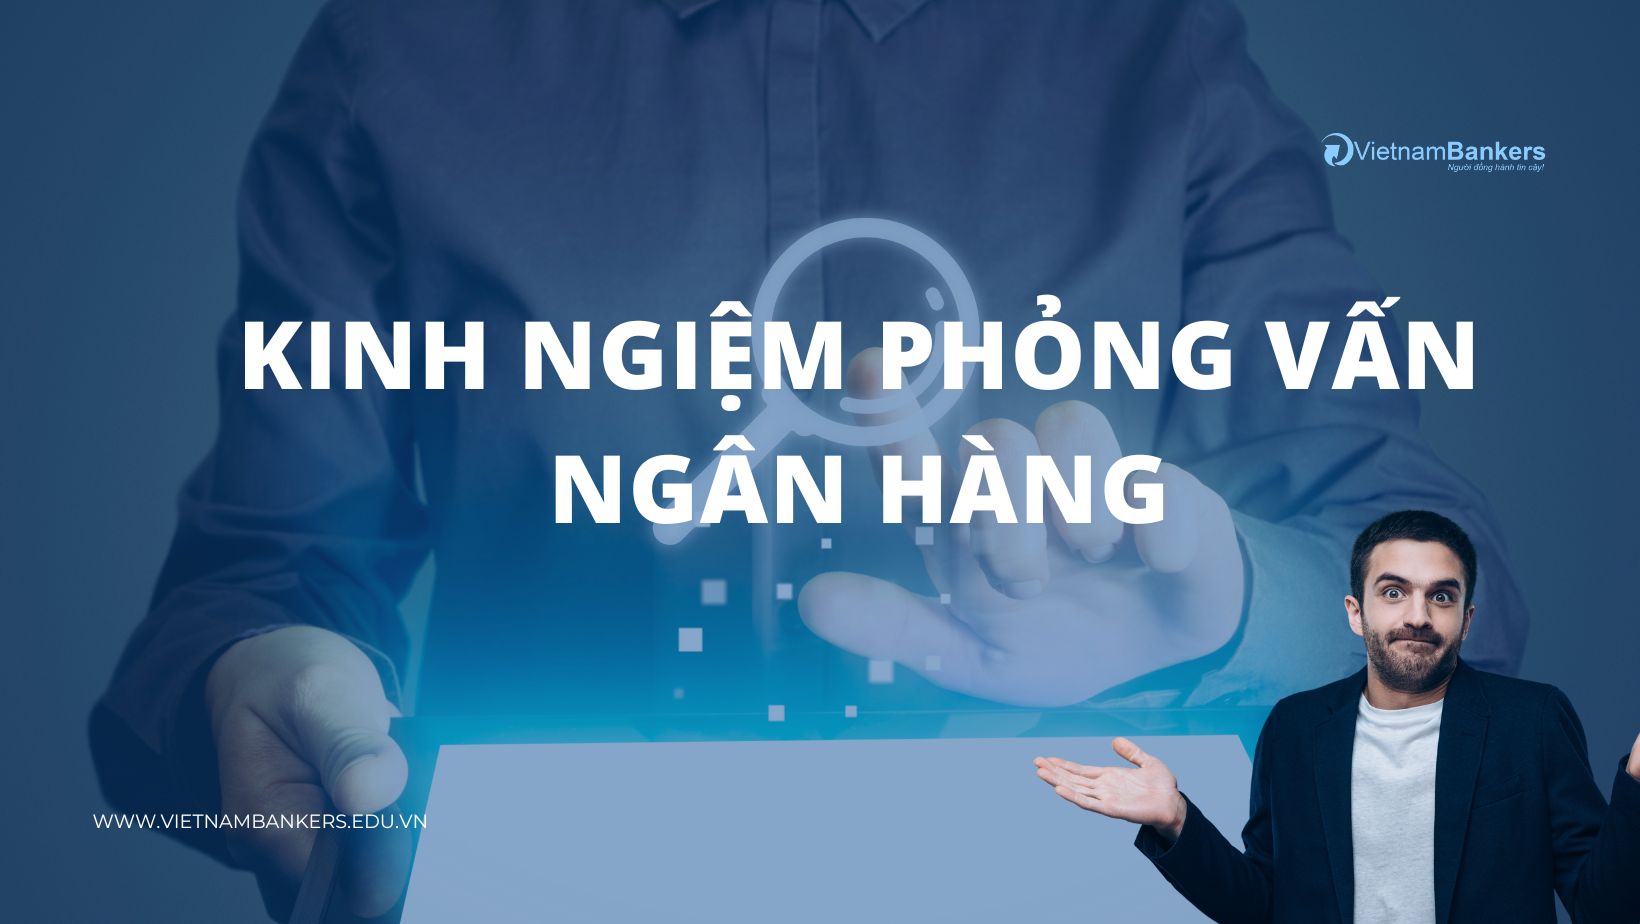 KINH NGHIỆM PHỎNG VẤN NGÂN HÀNG | VietnamBankers | Đào tạo Tài chính Ngân hàng